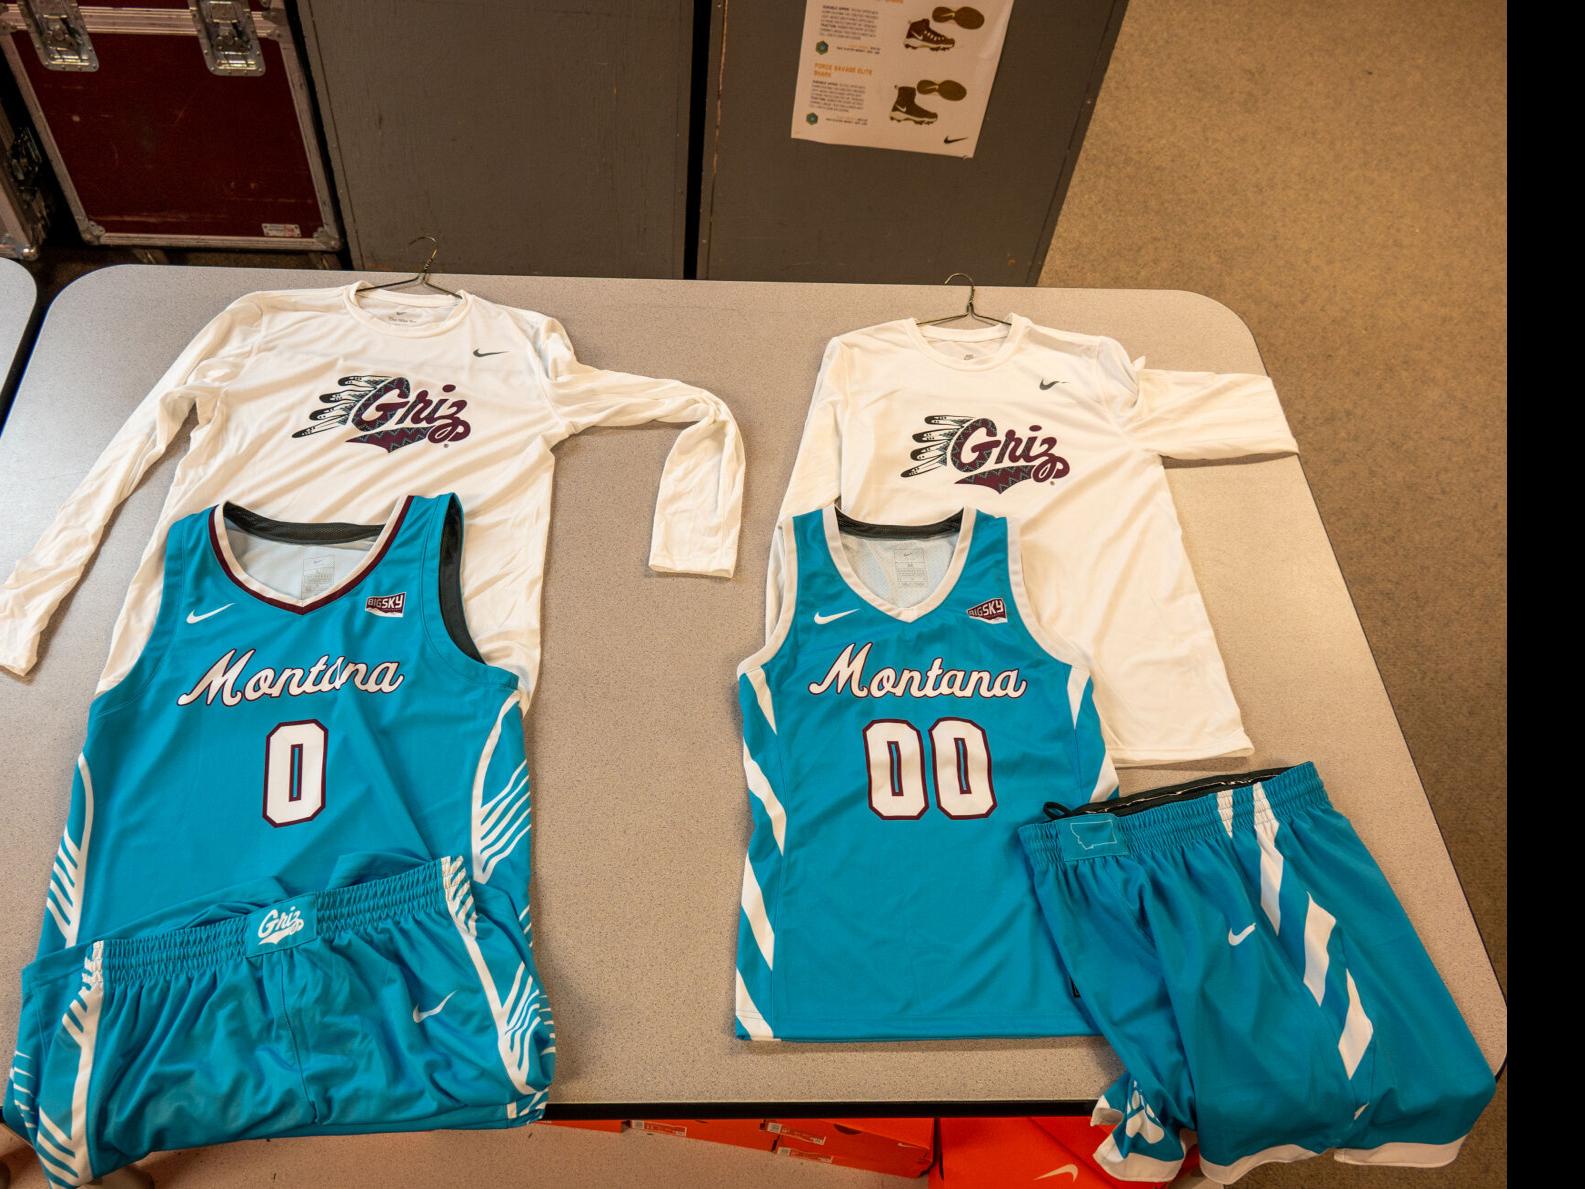 College teams wear Nike N7 jerseys as part of Native American